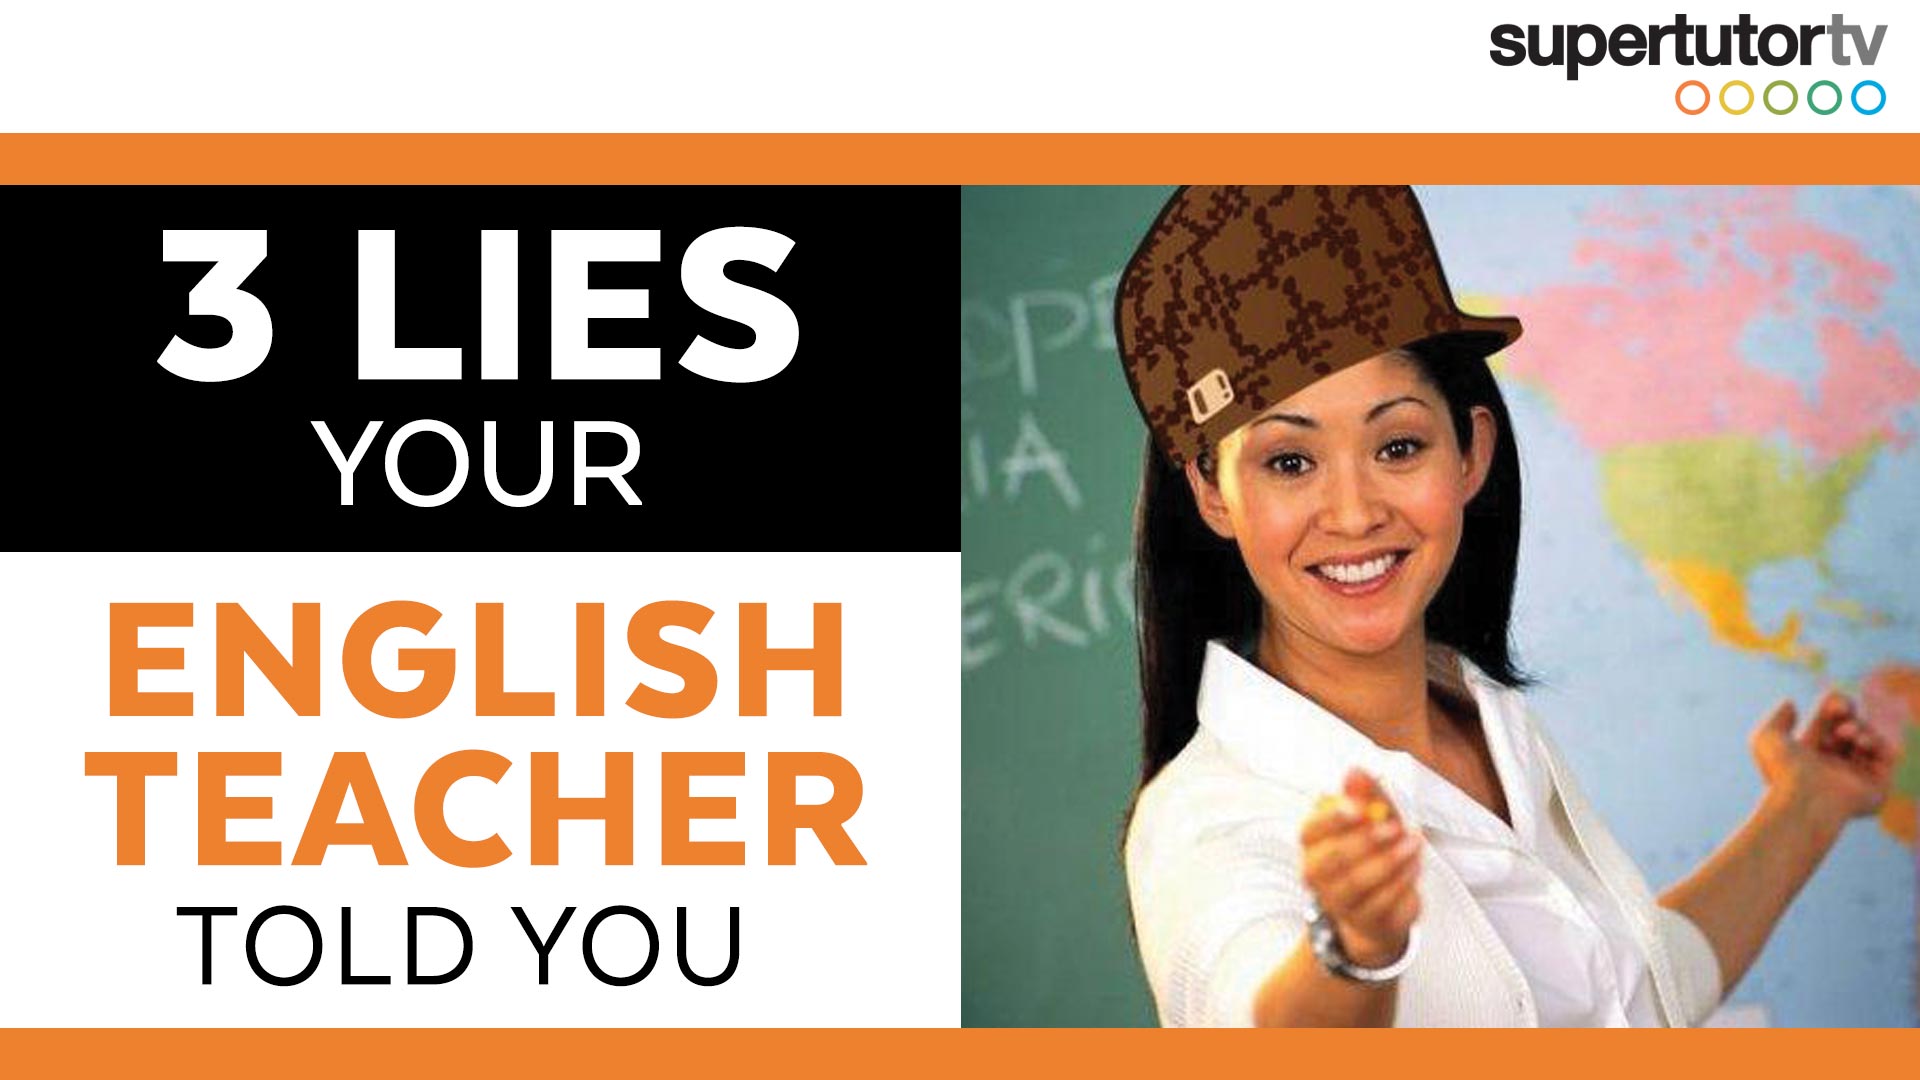 Учитель английского песня. You English. Your English teacher. Thumbnail : your English teacher. Tell a Lie to a teacher.